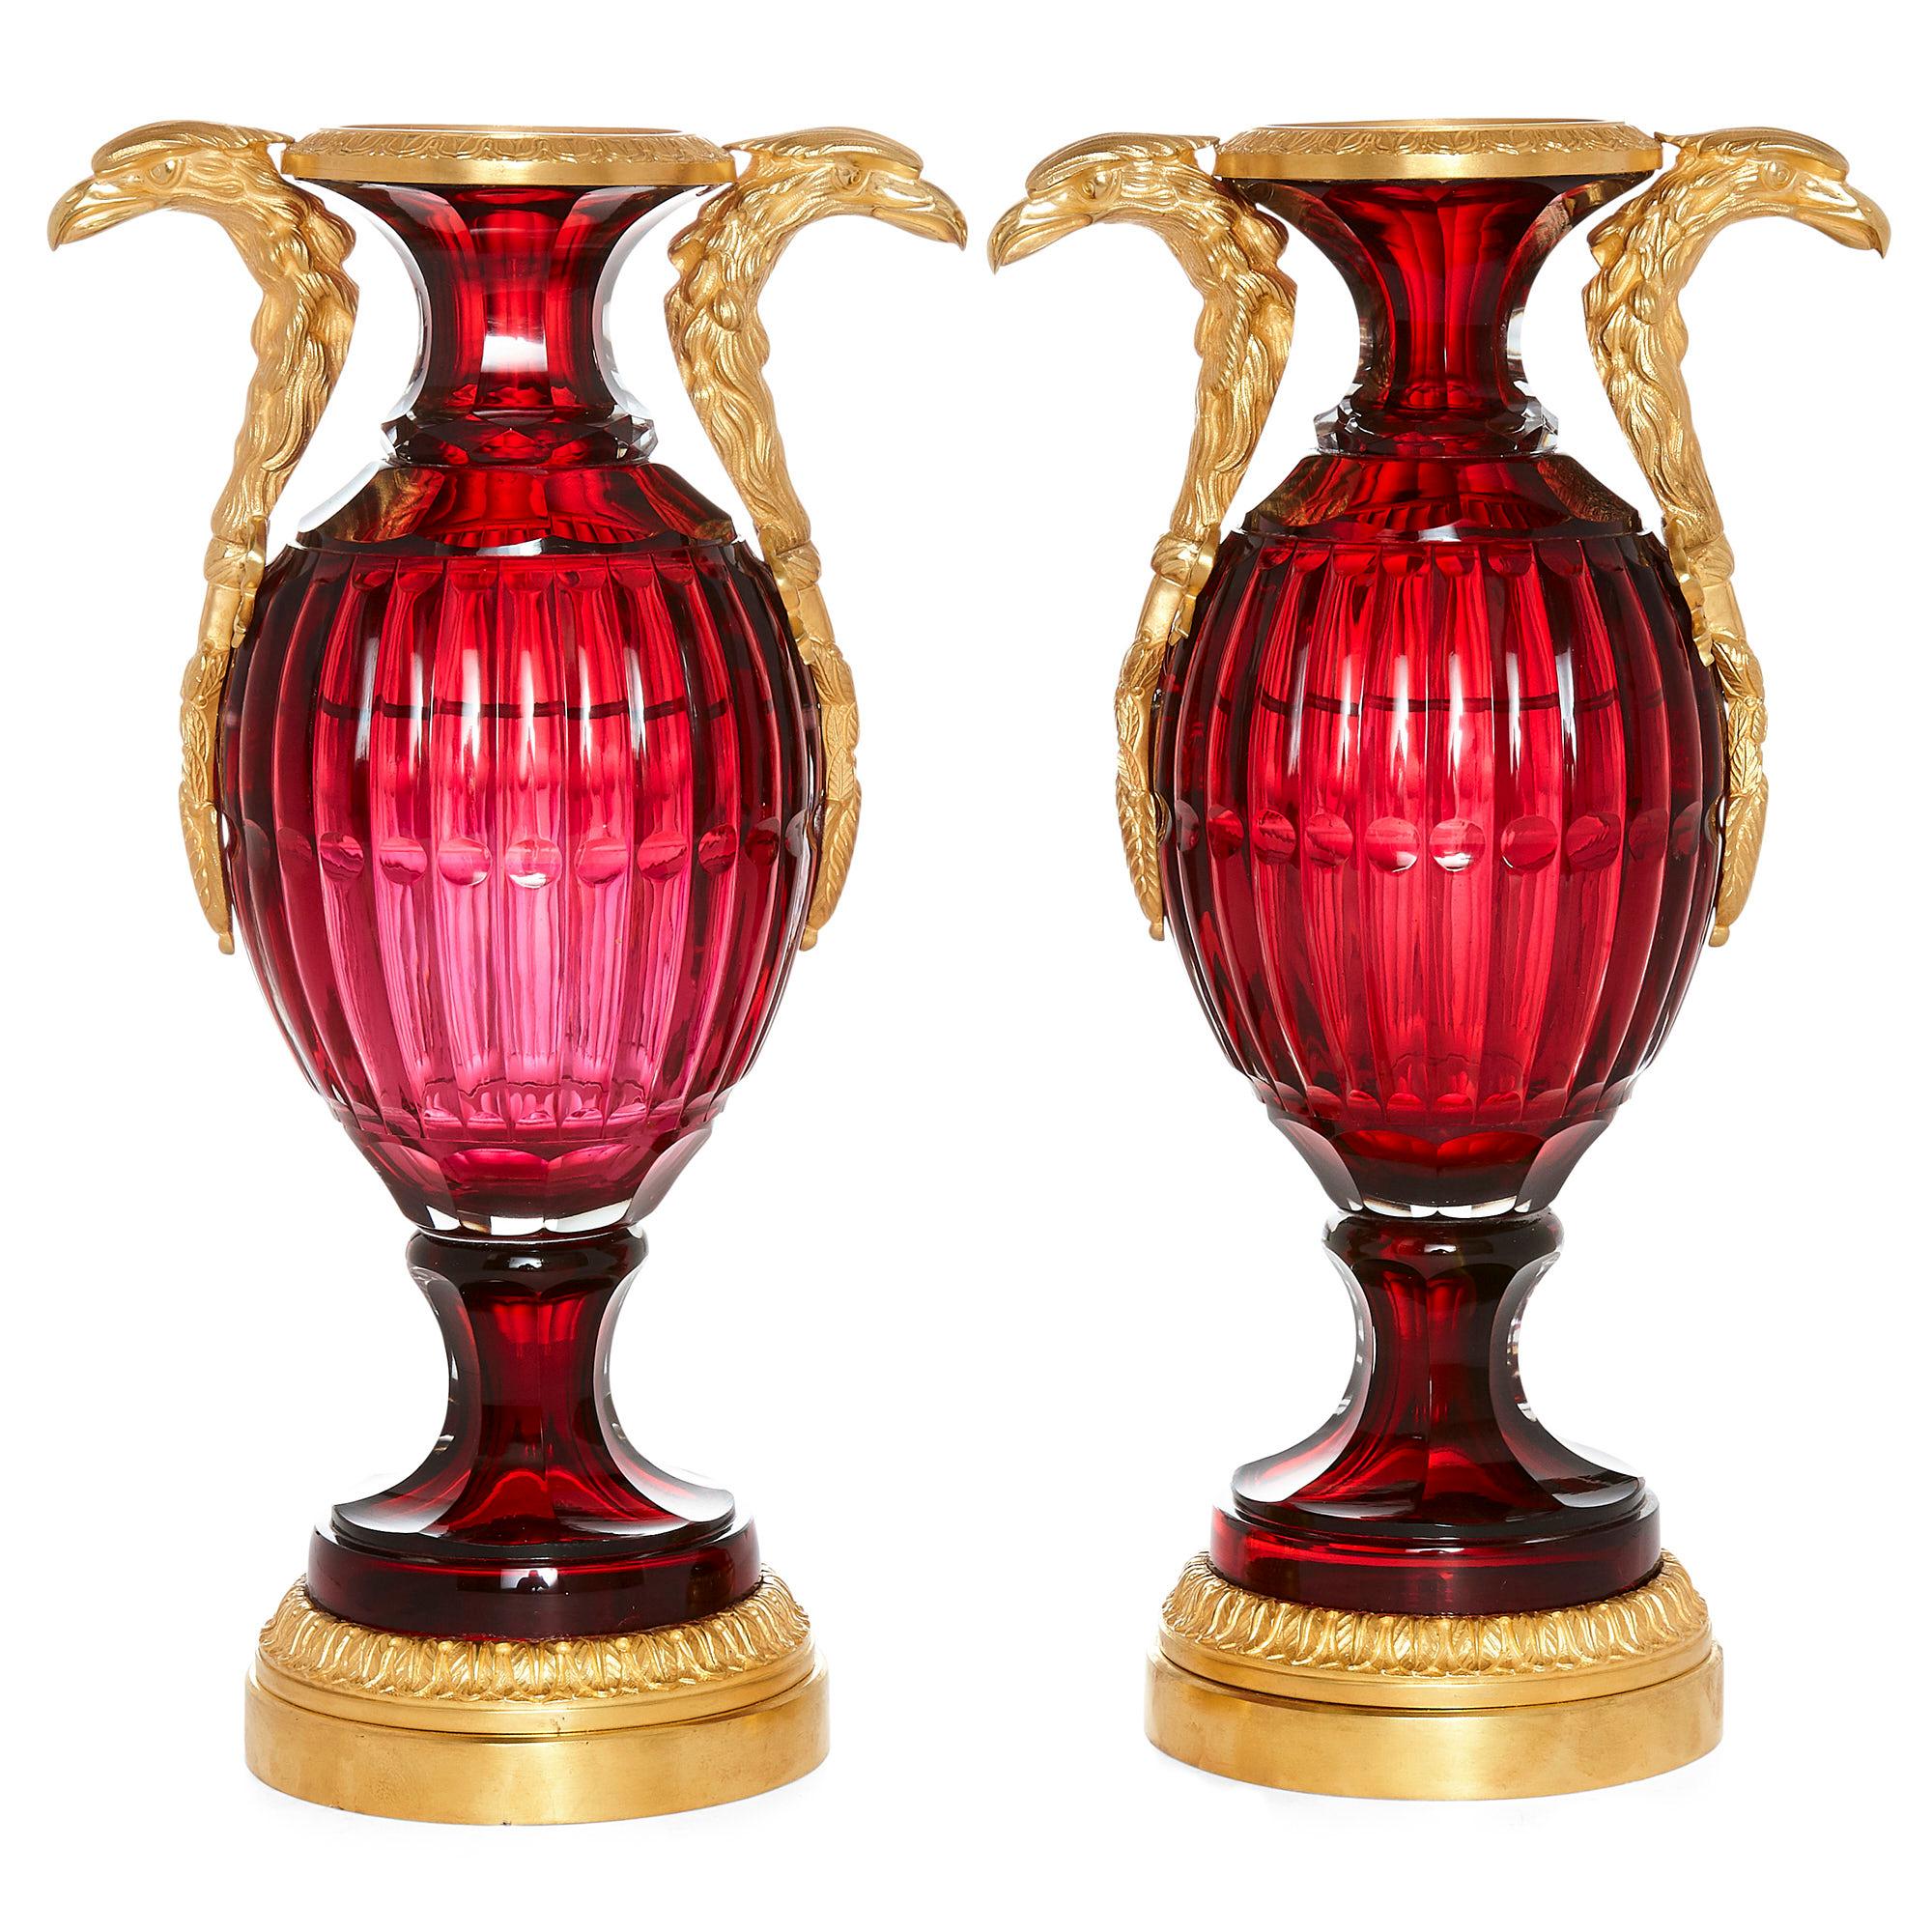 Zwei russische Vasen im neoklassischen Stil aus geschliffenem Glas und Ormolu,
Russisch, 20. Jahrhundert
Abmessungen: Höhe 37cm, Breite 20cm, Tiefe 13,5cm

Jede Vase hat einen eiförmigen, rubinfarbenen Korpus aus geschliffenem Glas und einen